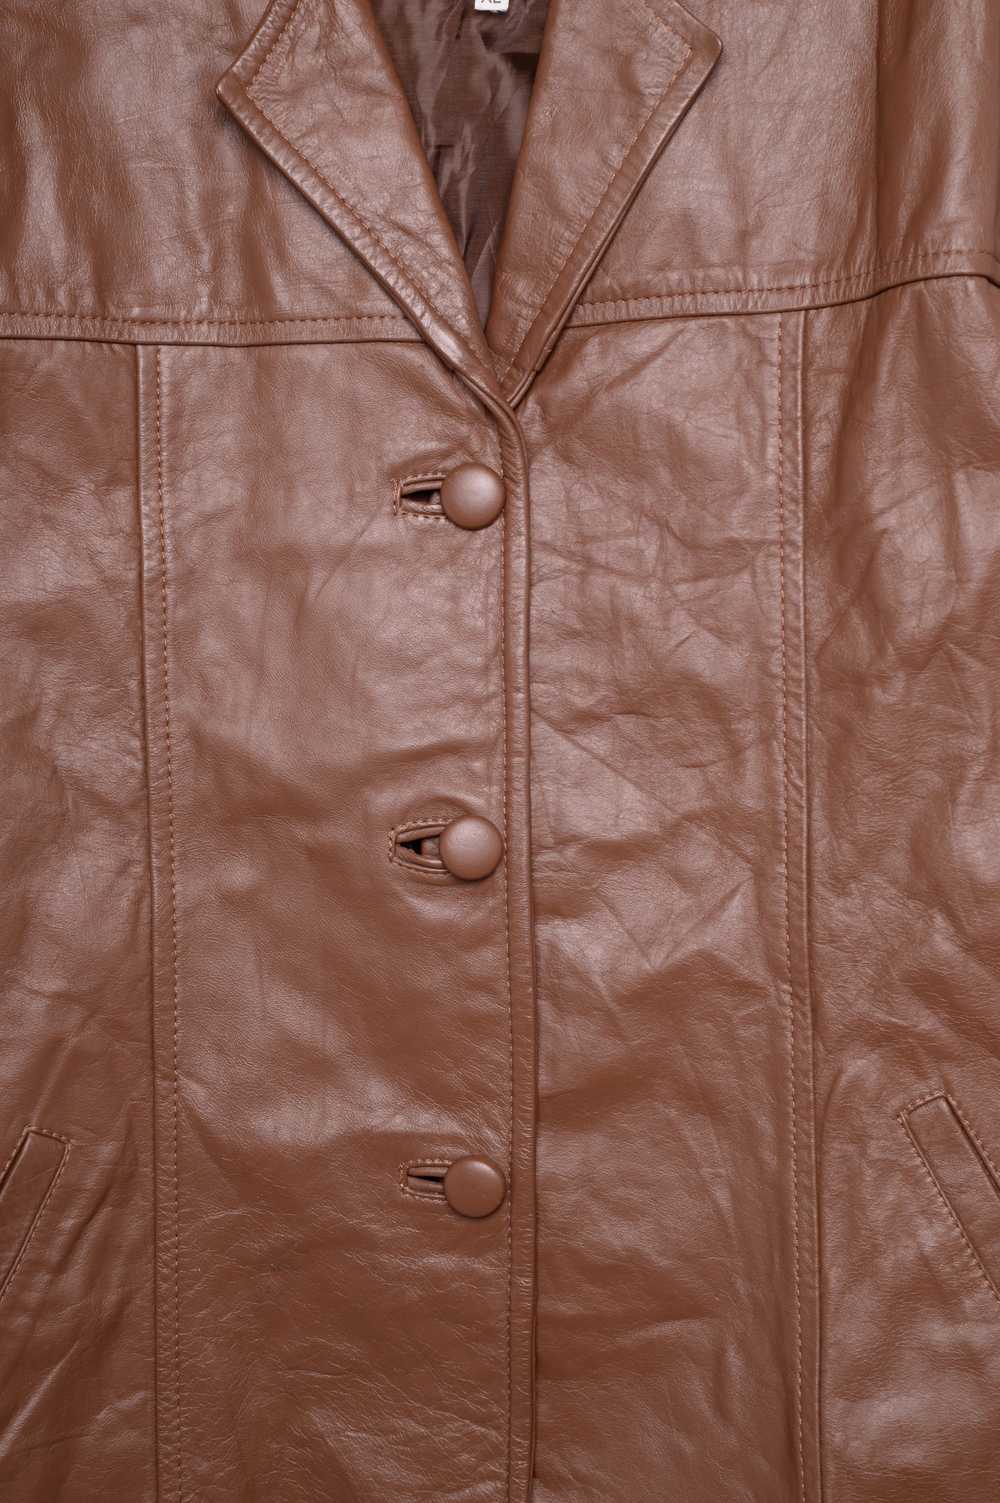 1970s Caramel Leather Jacket - image 2